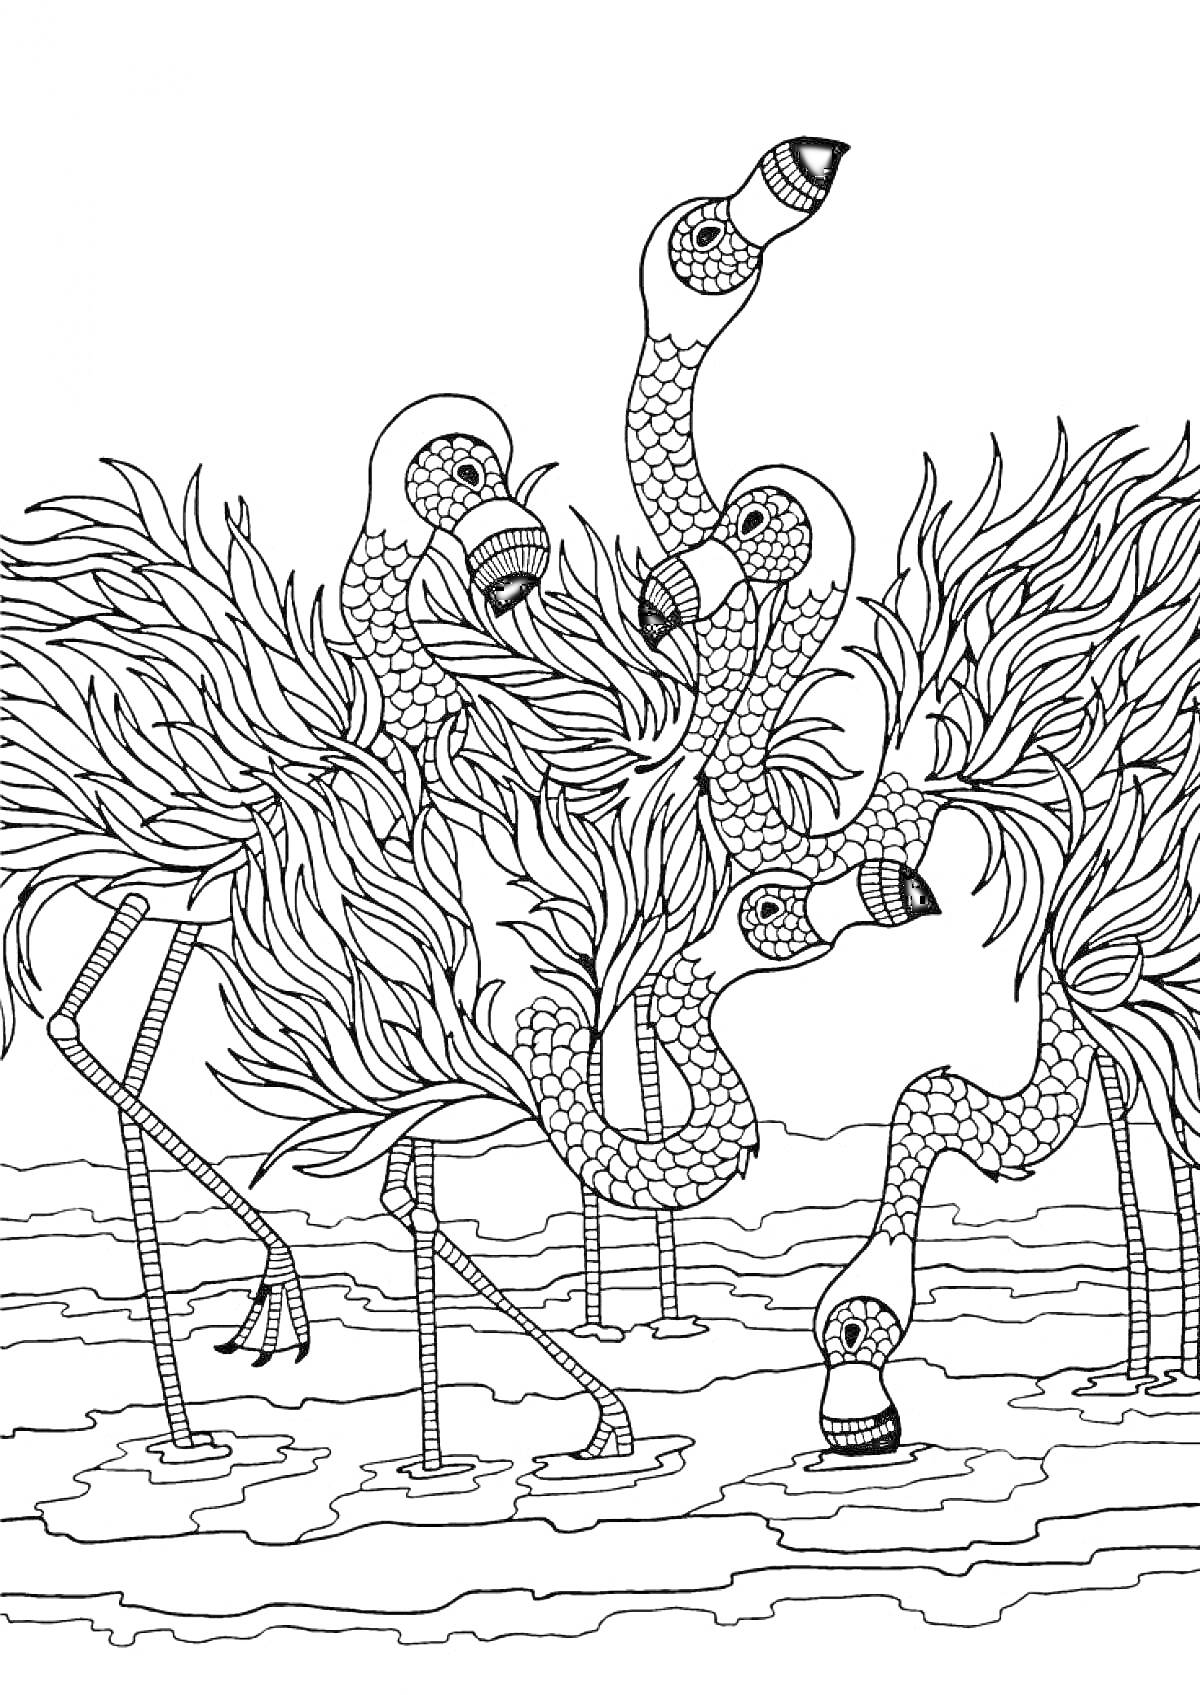 Фламинго с узорчатыми телами и перьями в водоеме